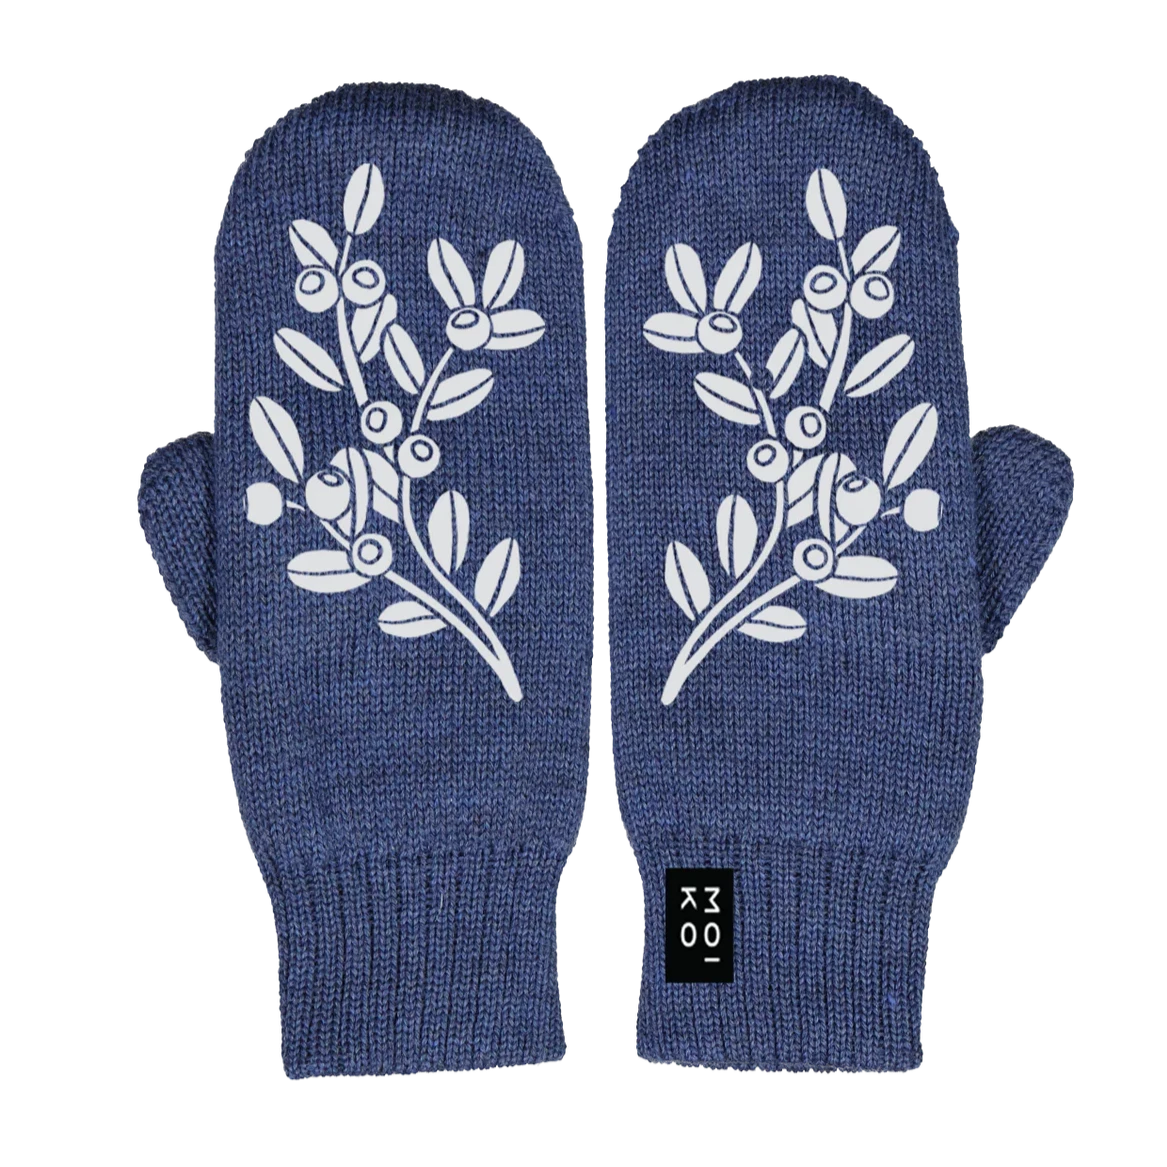 Blueberry gloves